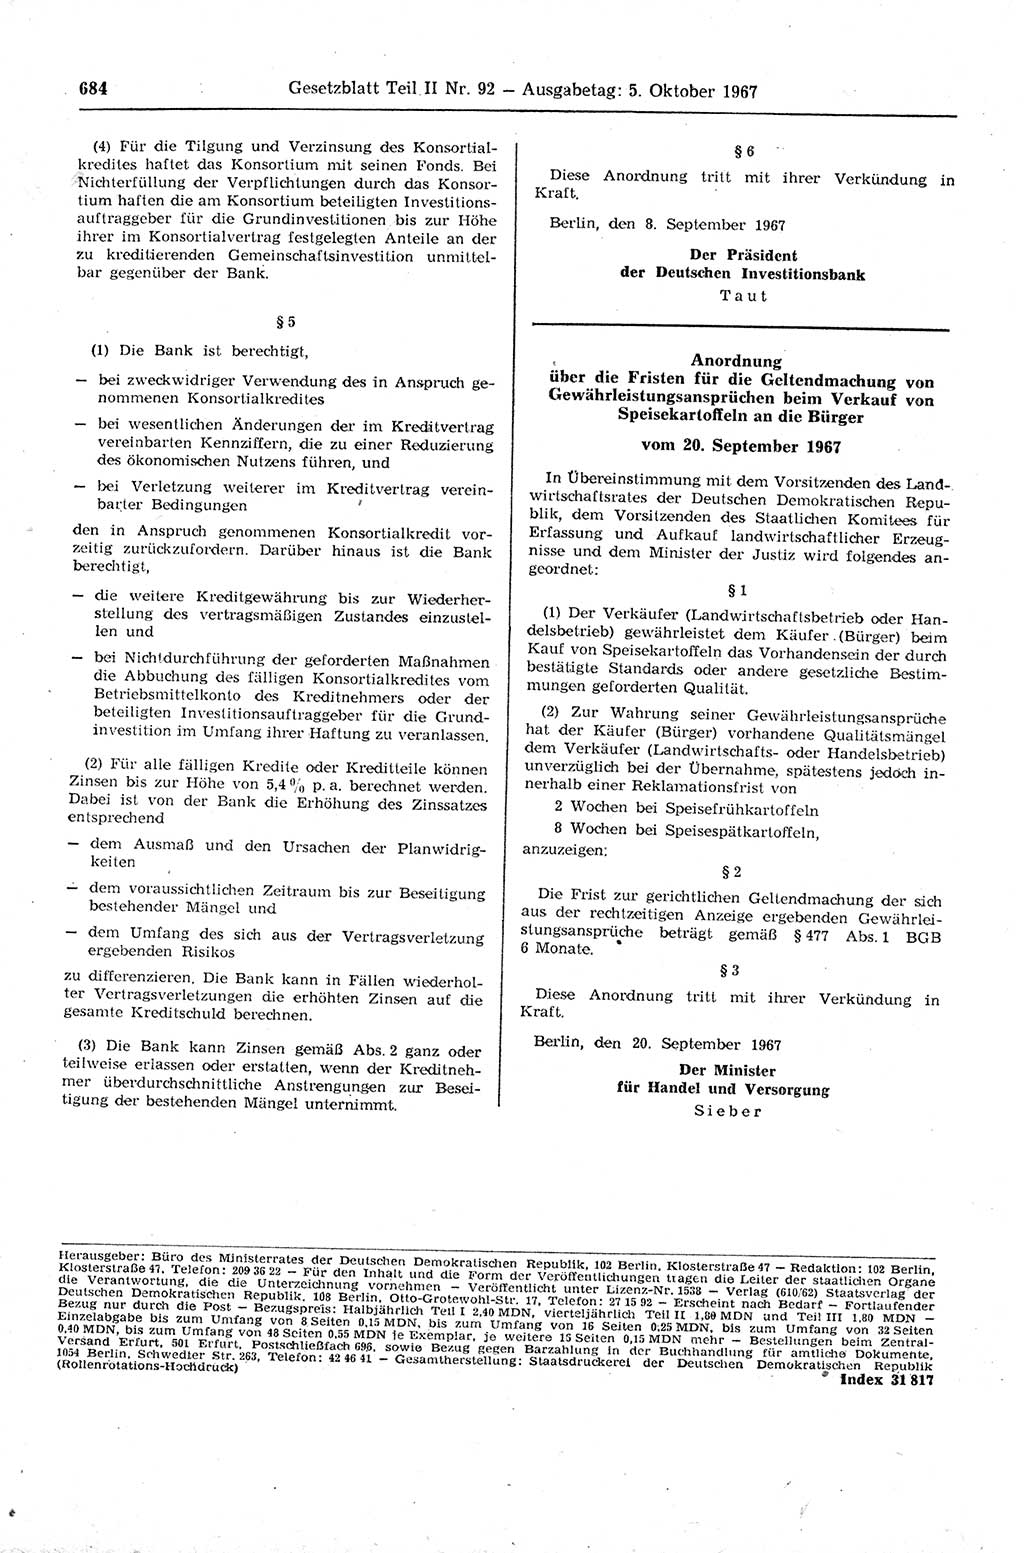 Gesetzblatt (GBl.) der Deutschen Demokratischen Republik (DDR) Teil ⅠⅠ 1967, Seite 684 (GBl. DDR ⅠⅠ 1967, S. 684)